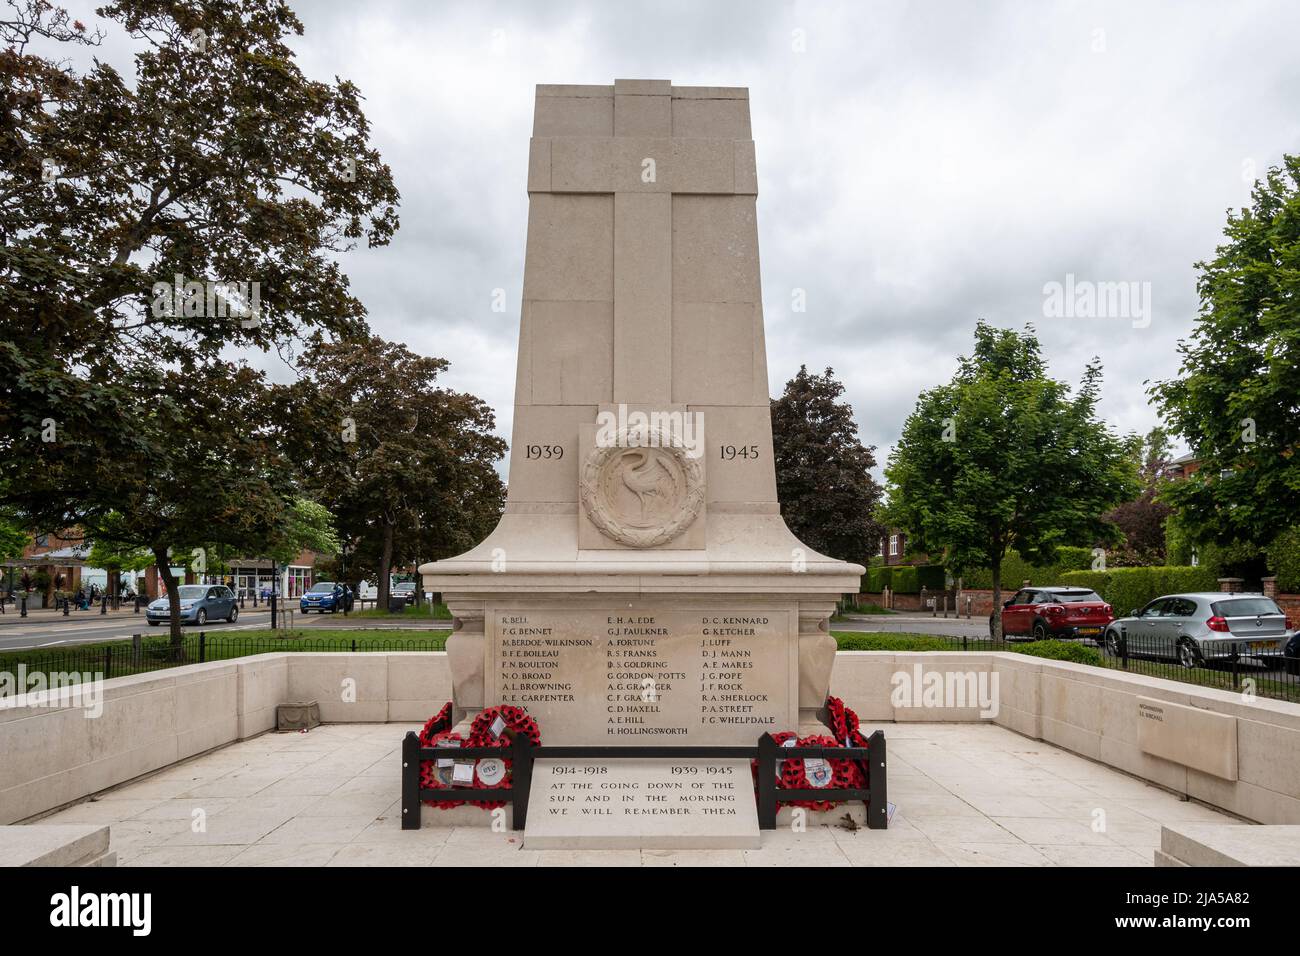 Mémorial de guerre du village de Cranleigh, Surrey, Angleterre, Royaume-Uni Banque D'Images